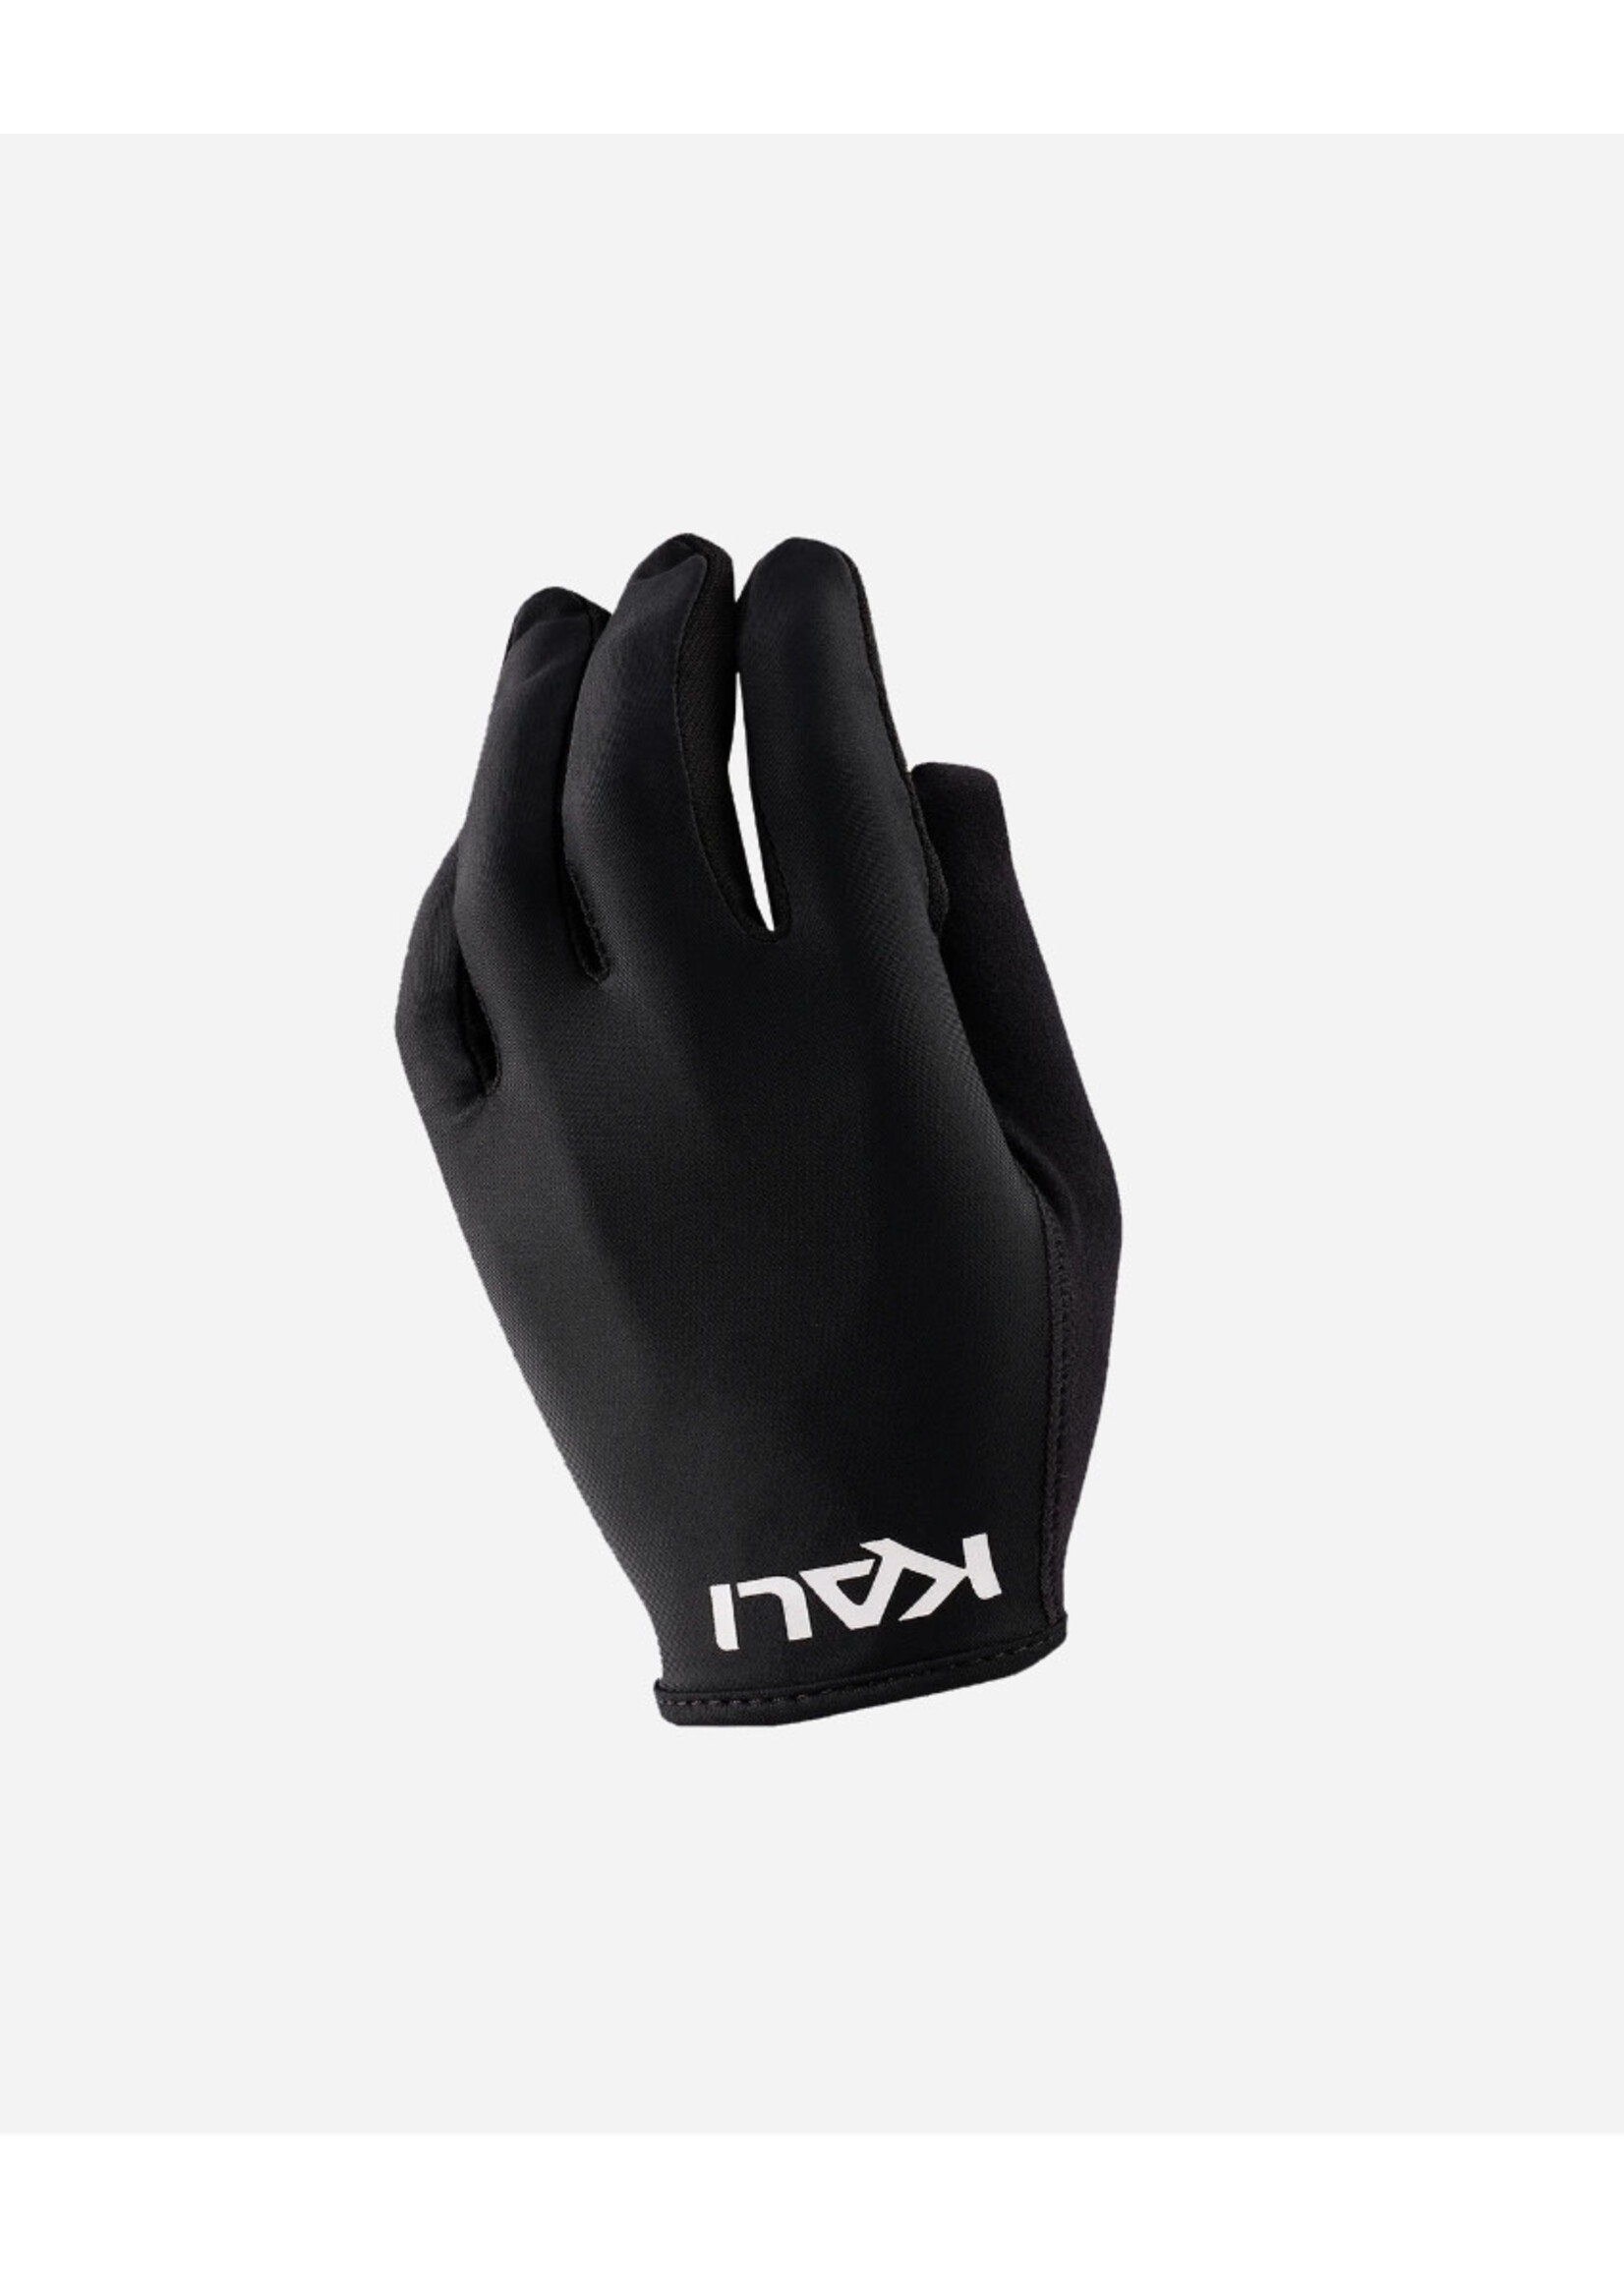 Kali Protectives Mission Glove Gloves